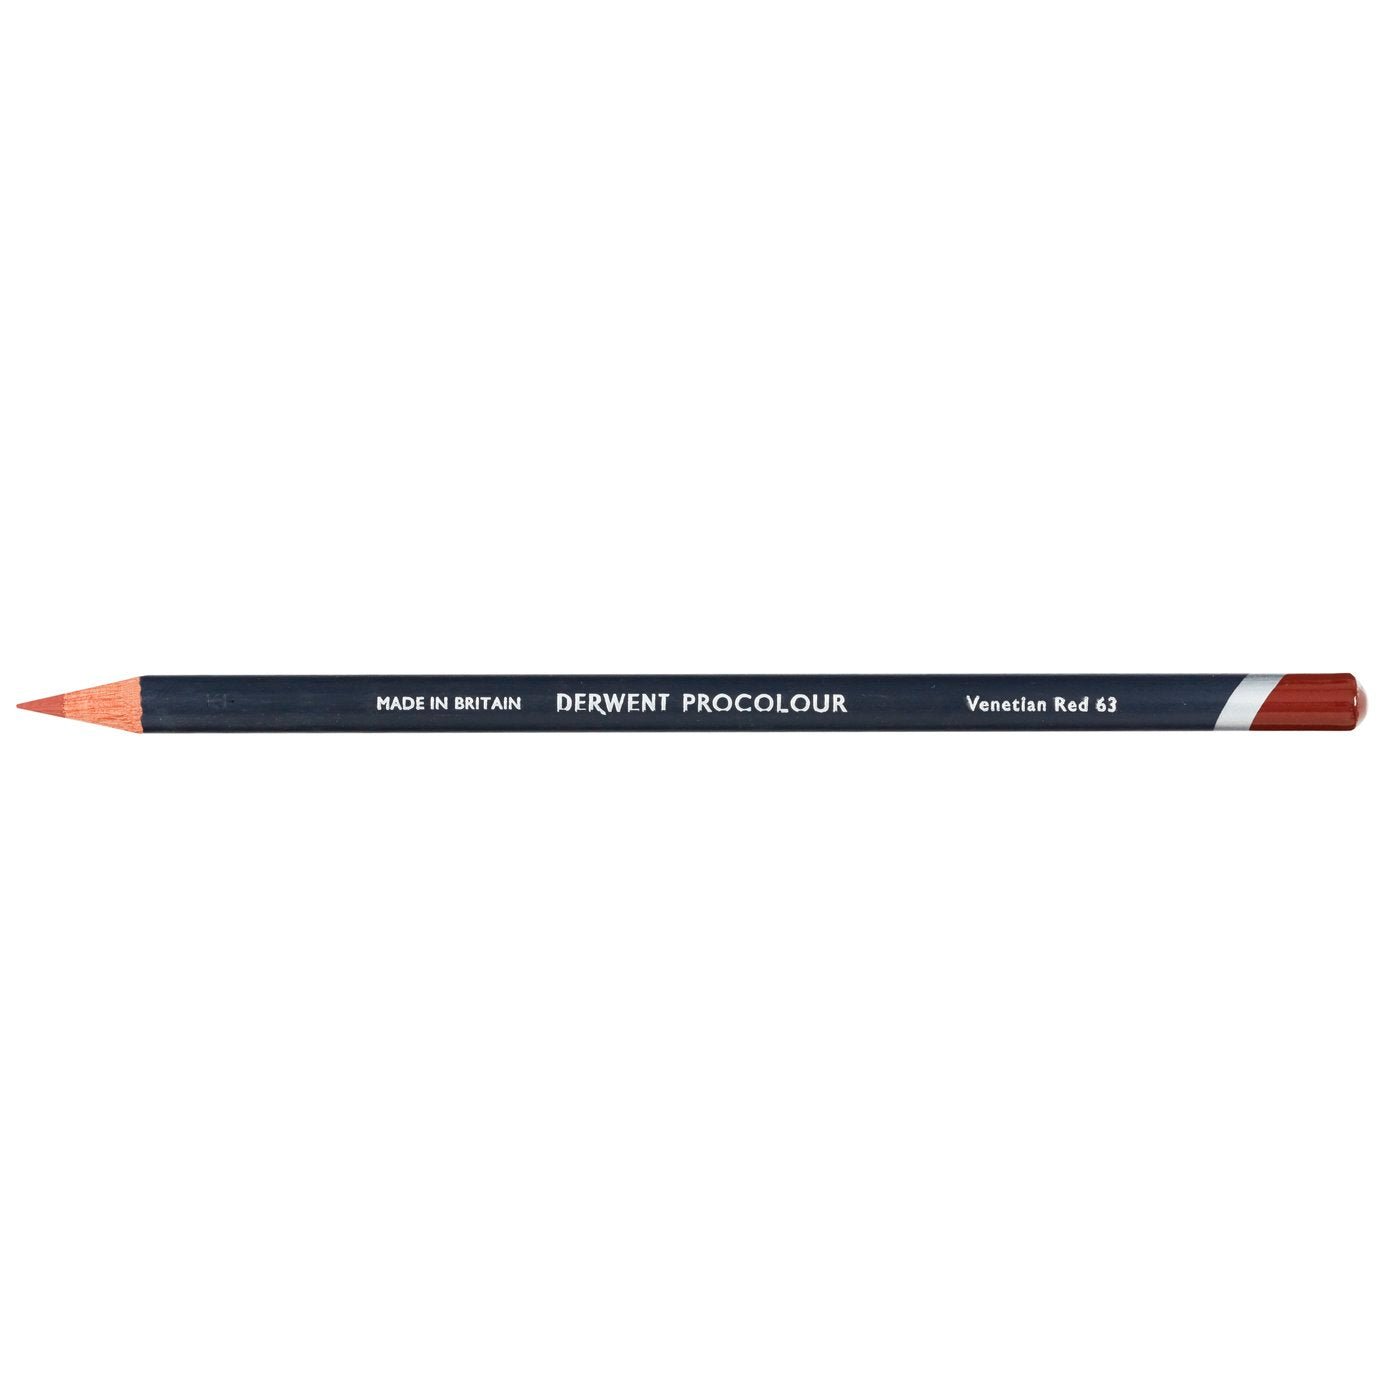 Derwent Procolour Pencil Venetian Red 63 - theartshop.com.au